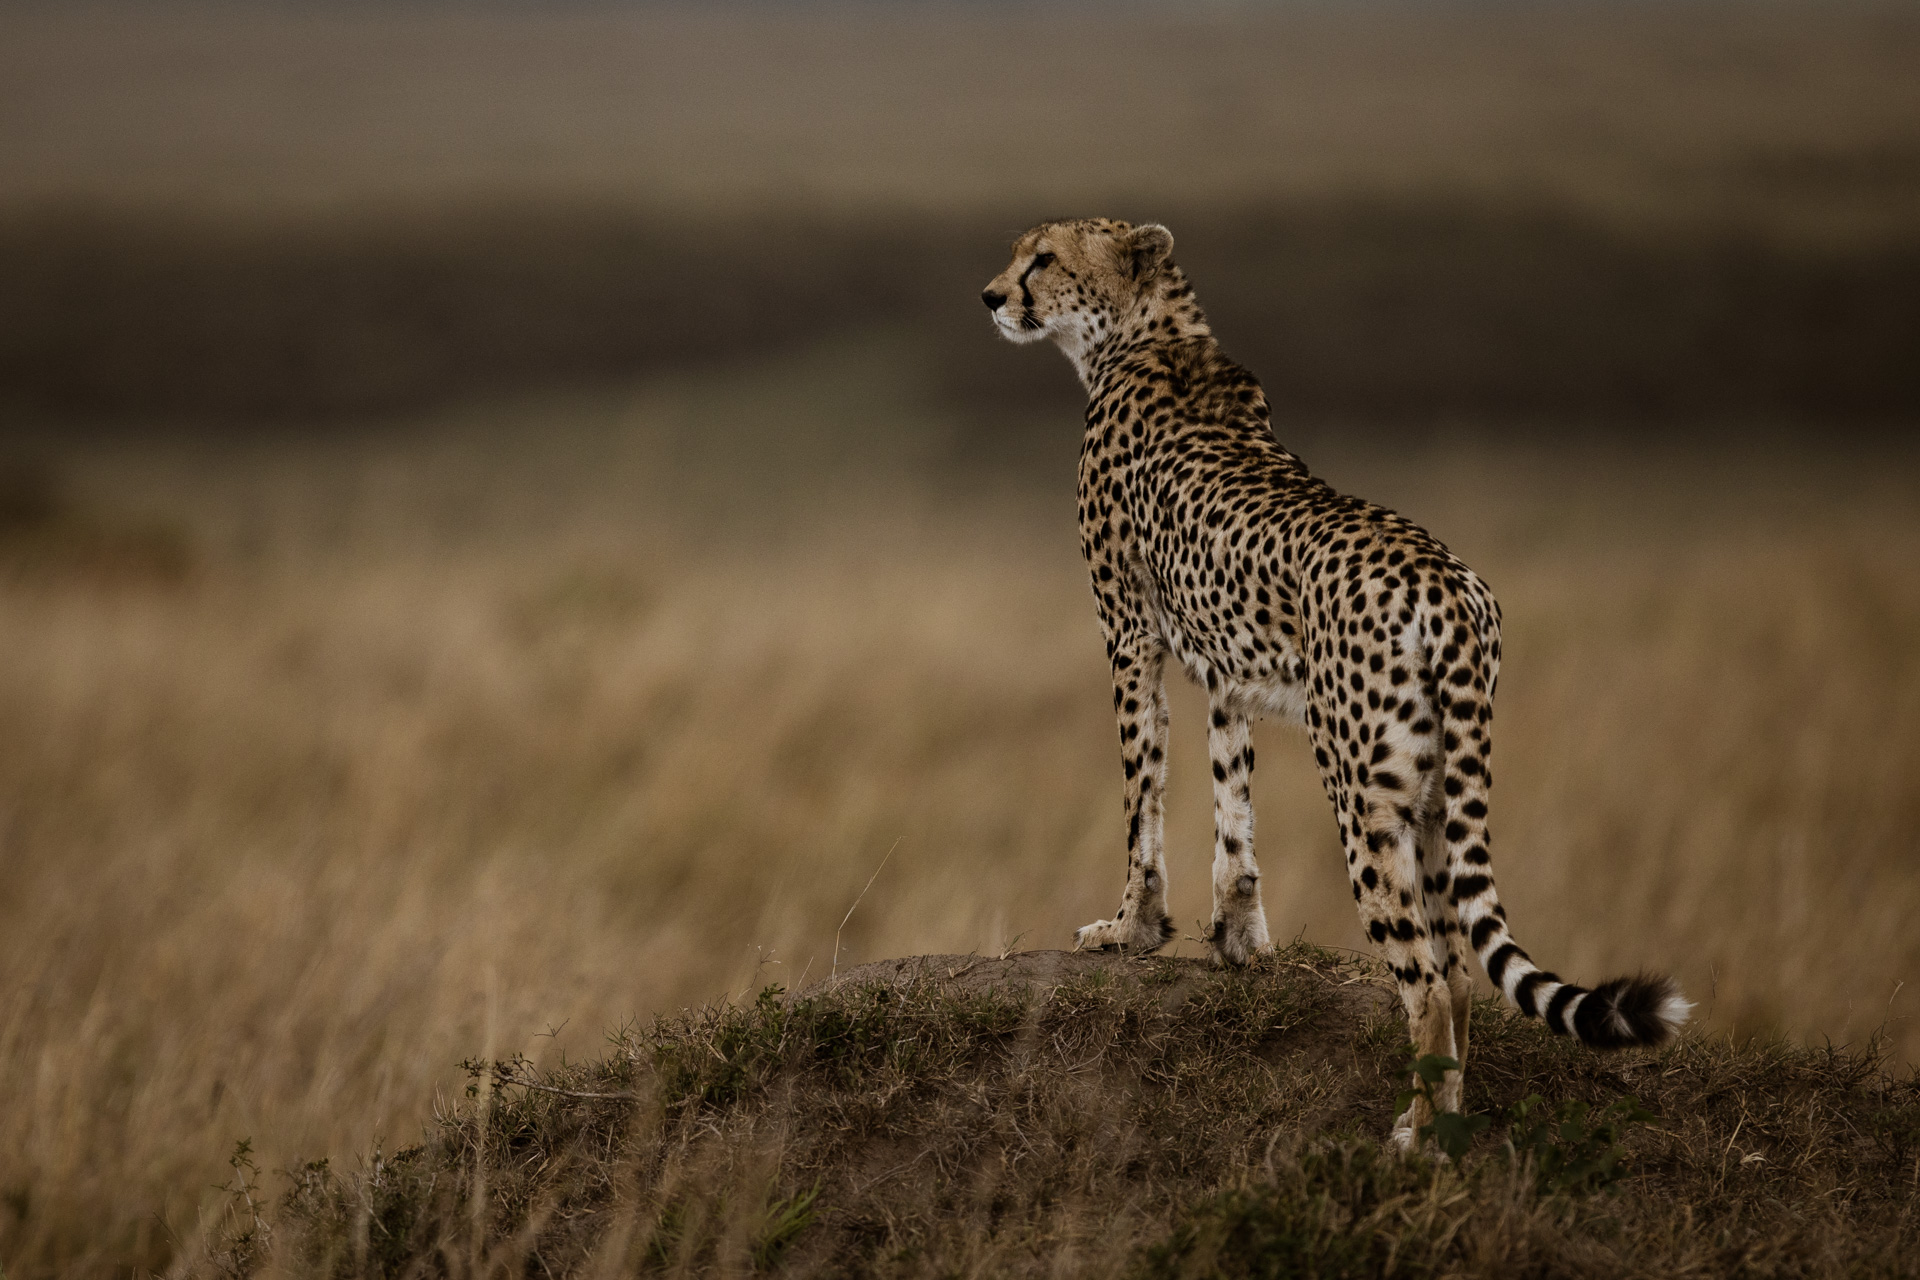 Cheetah standing on mound